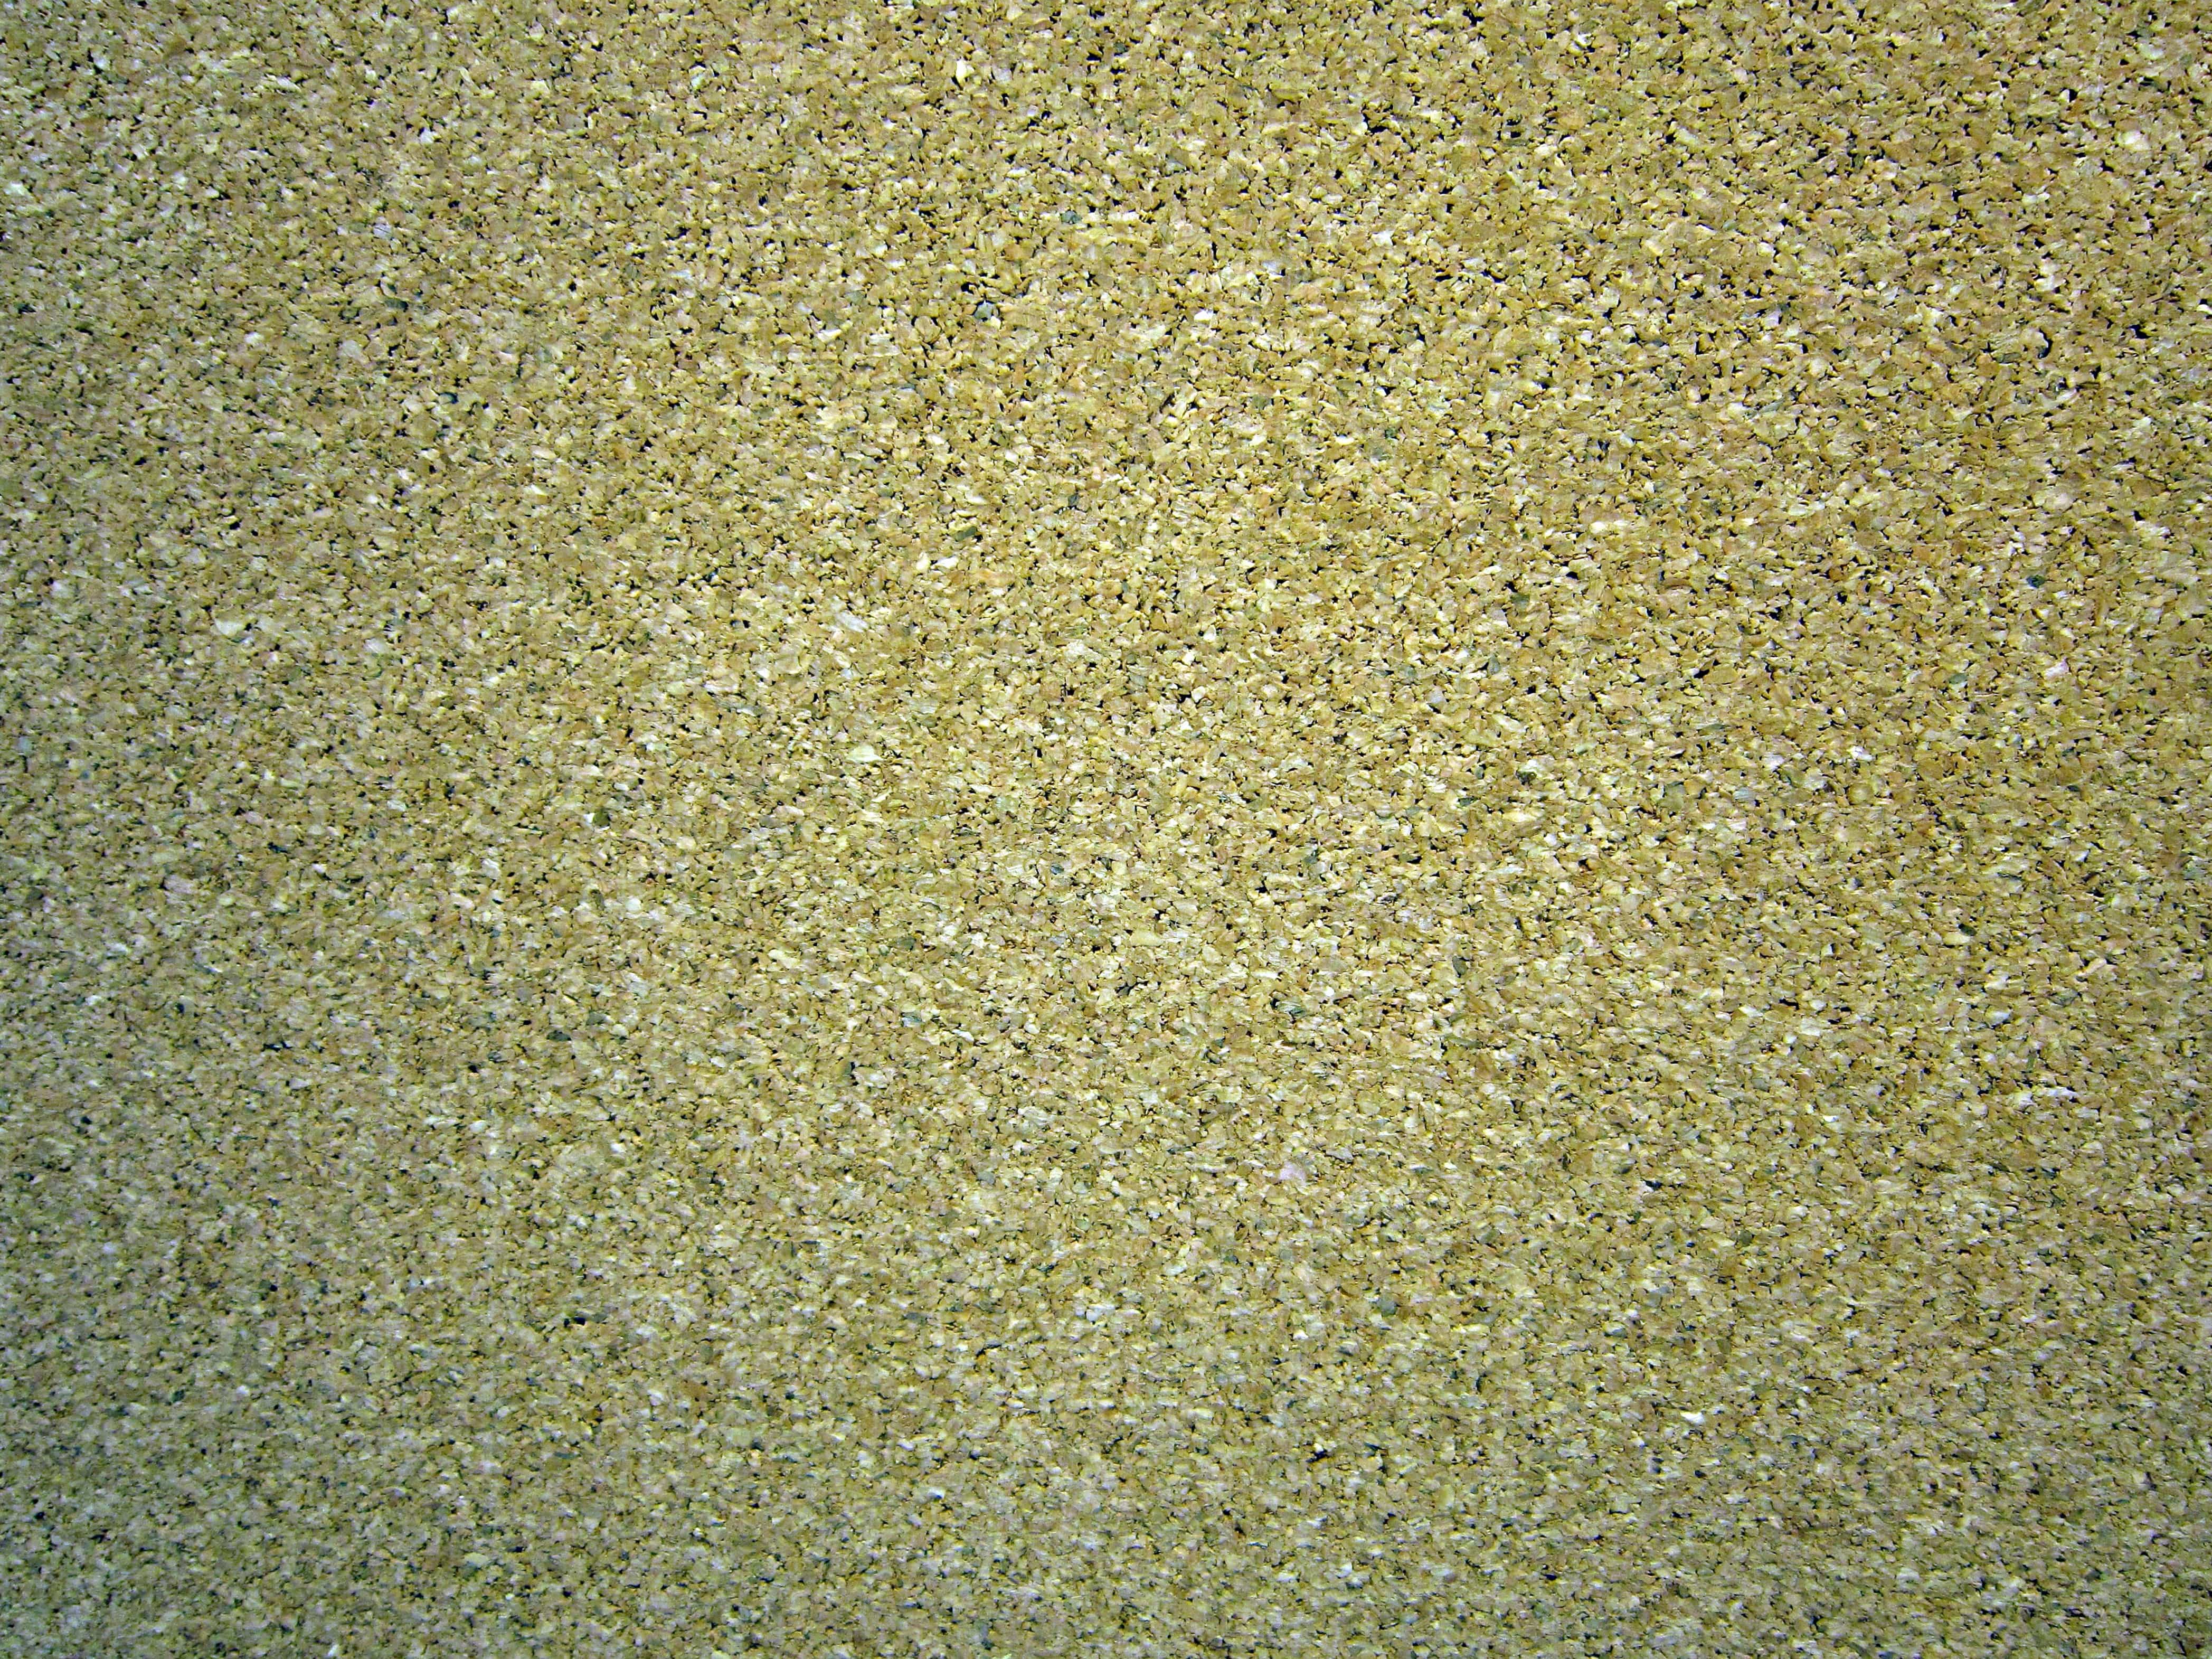 Sand pattern photo